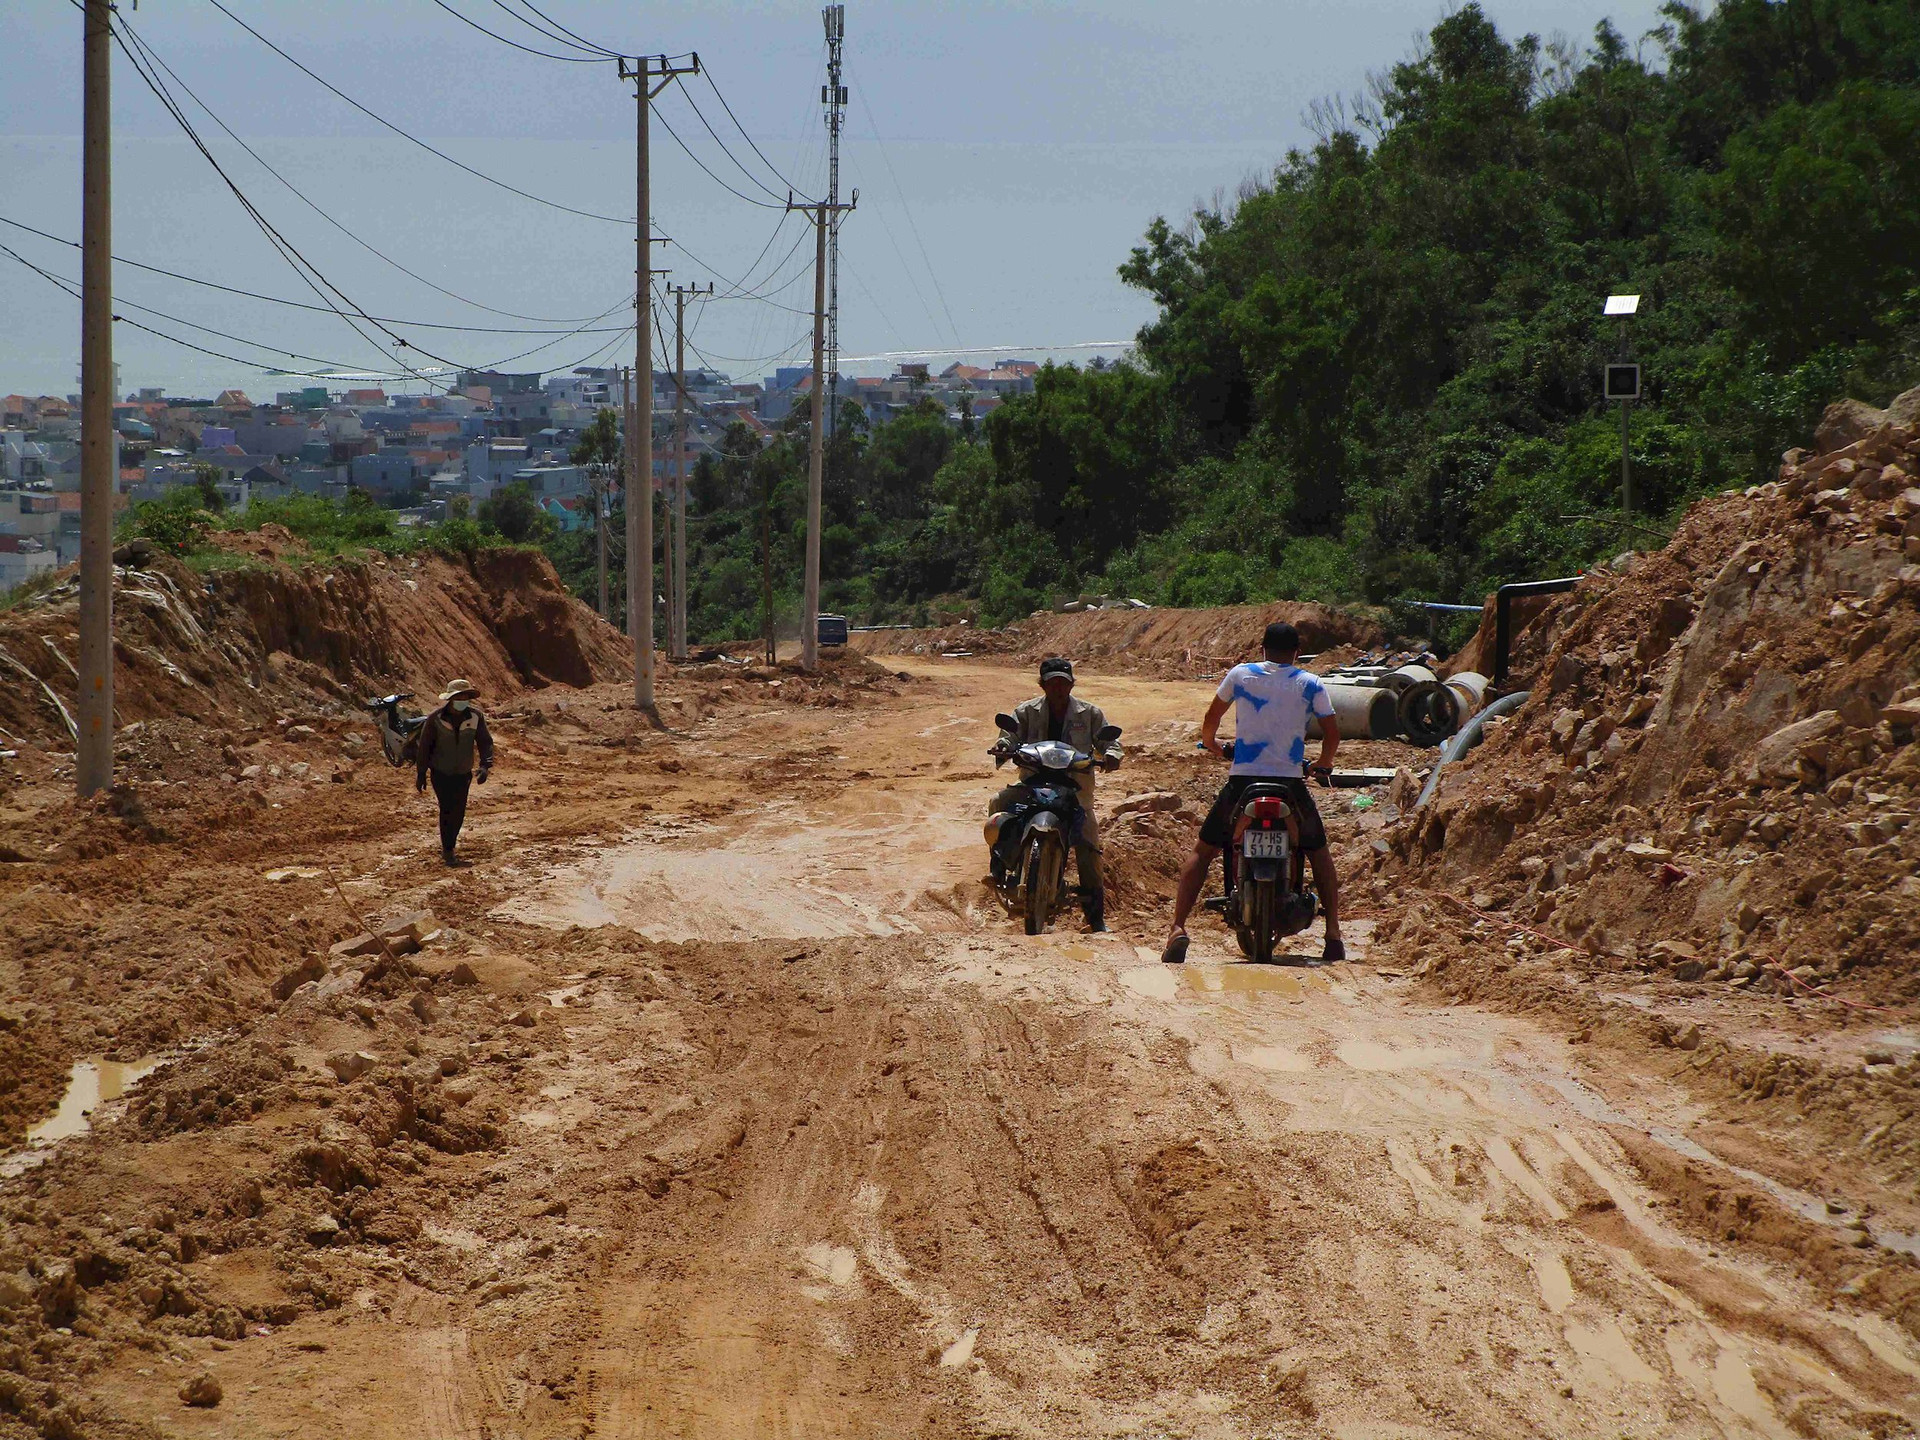 Bình Định: Dân khốn khổ vì đường sình lầy do thi công 